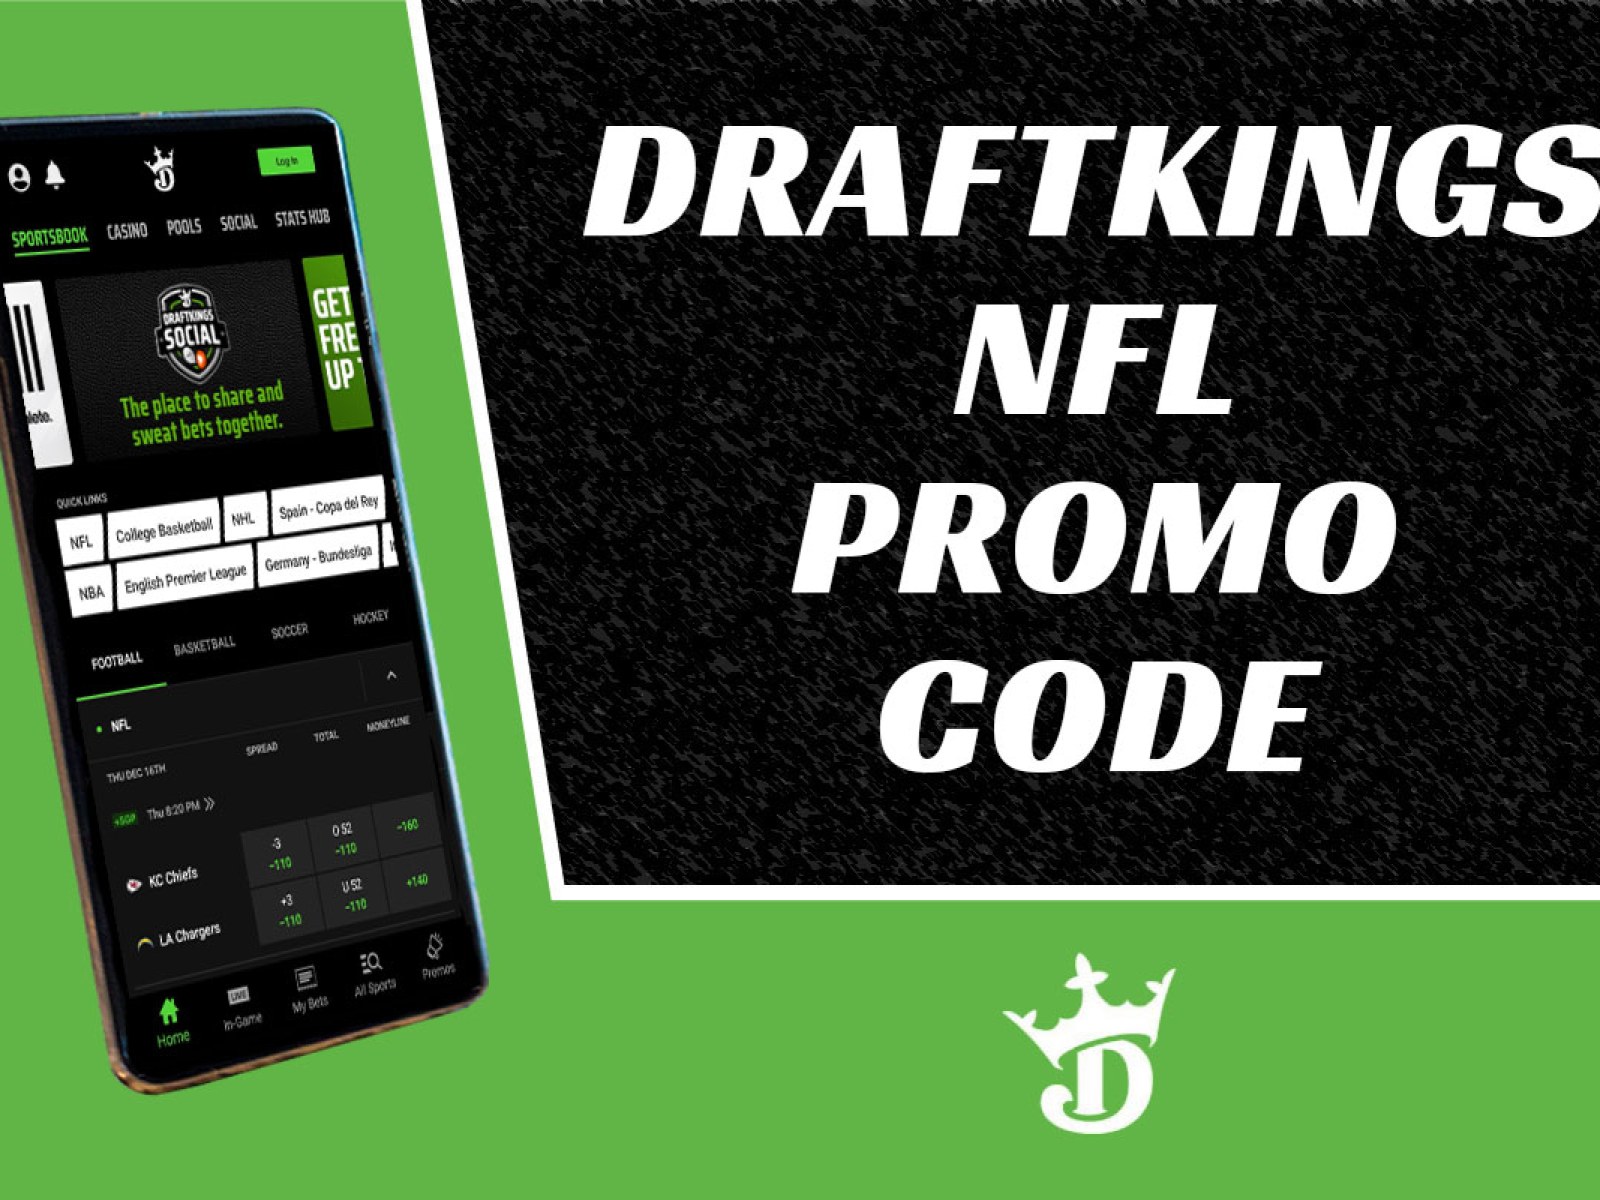 DraftKings NFL Promo Code: Grab $200 Bonus for Sunday Games